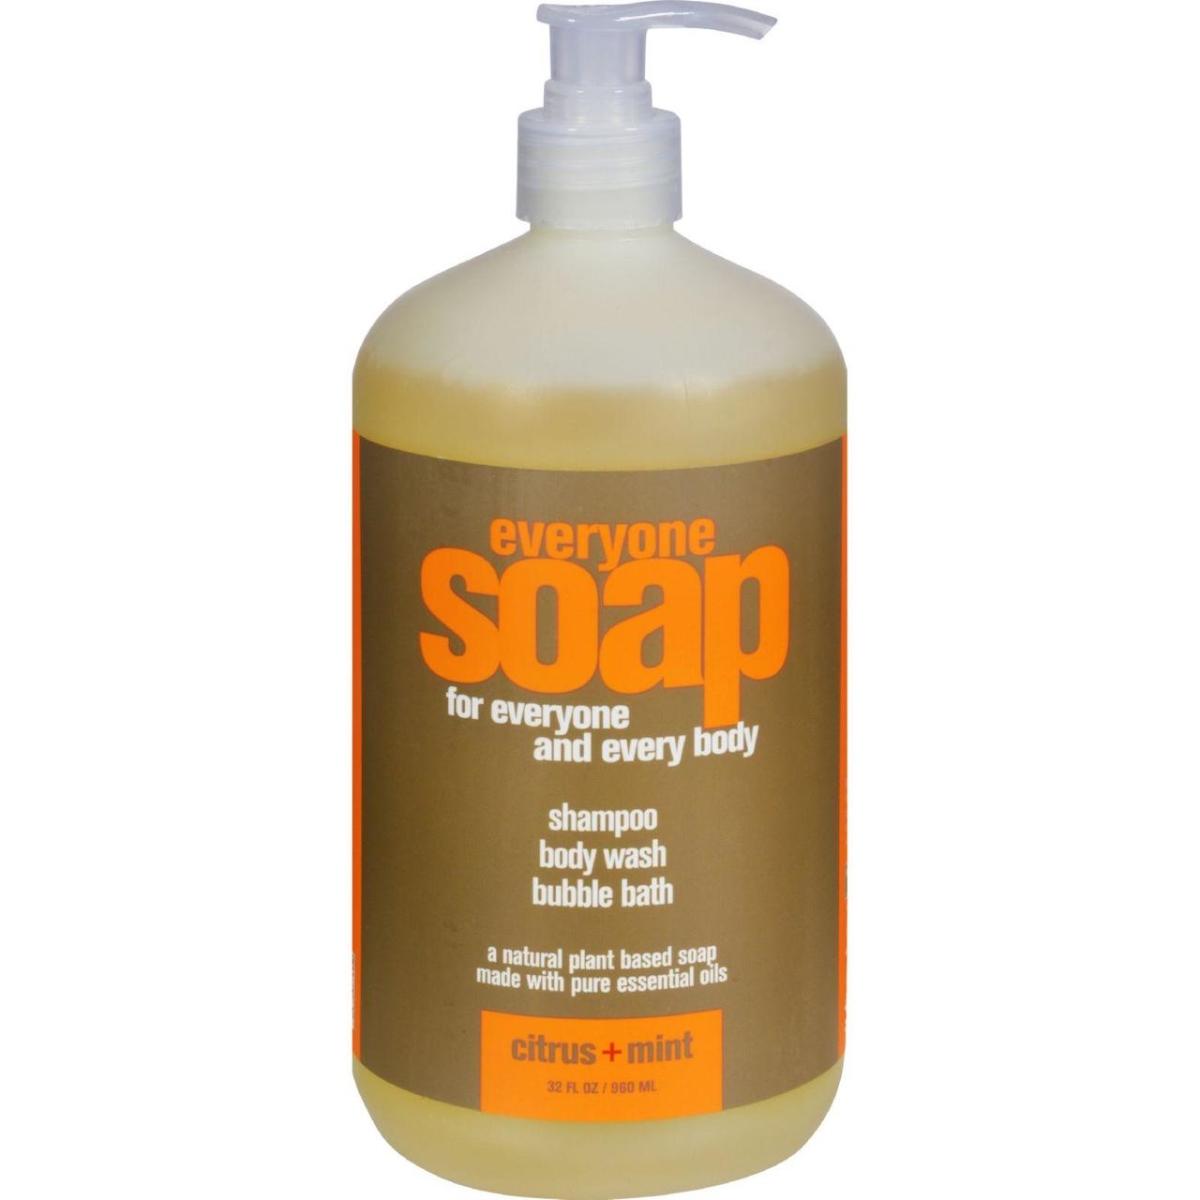 Hg1077718 32 Fl Oz Everyone Liquid Soap, Citrus & Mint